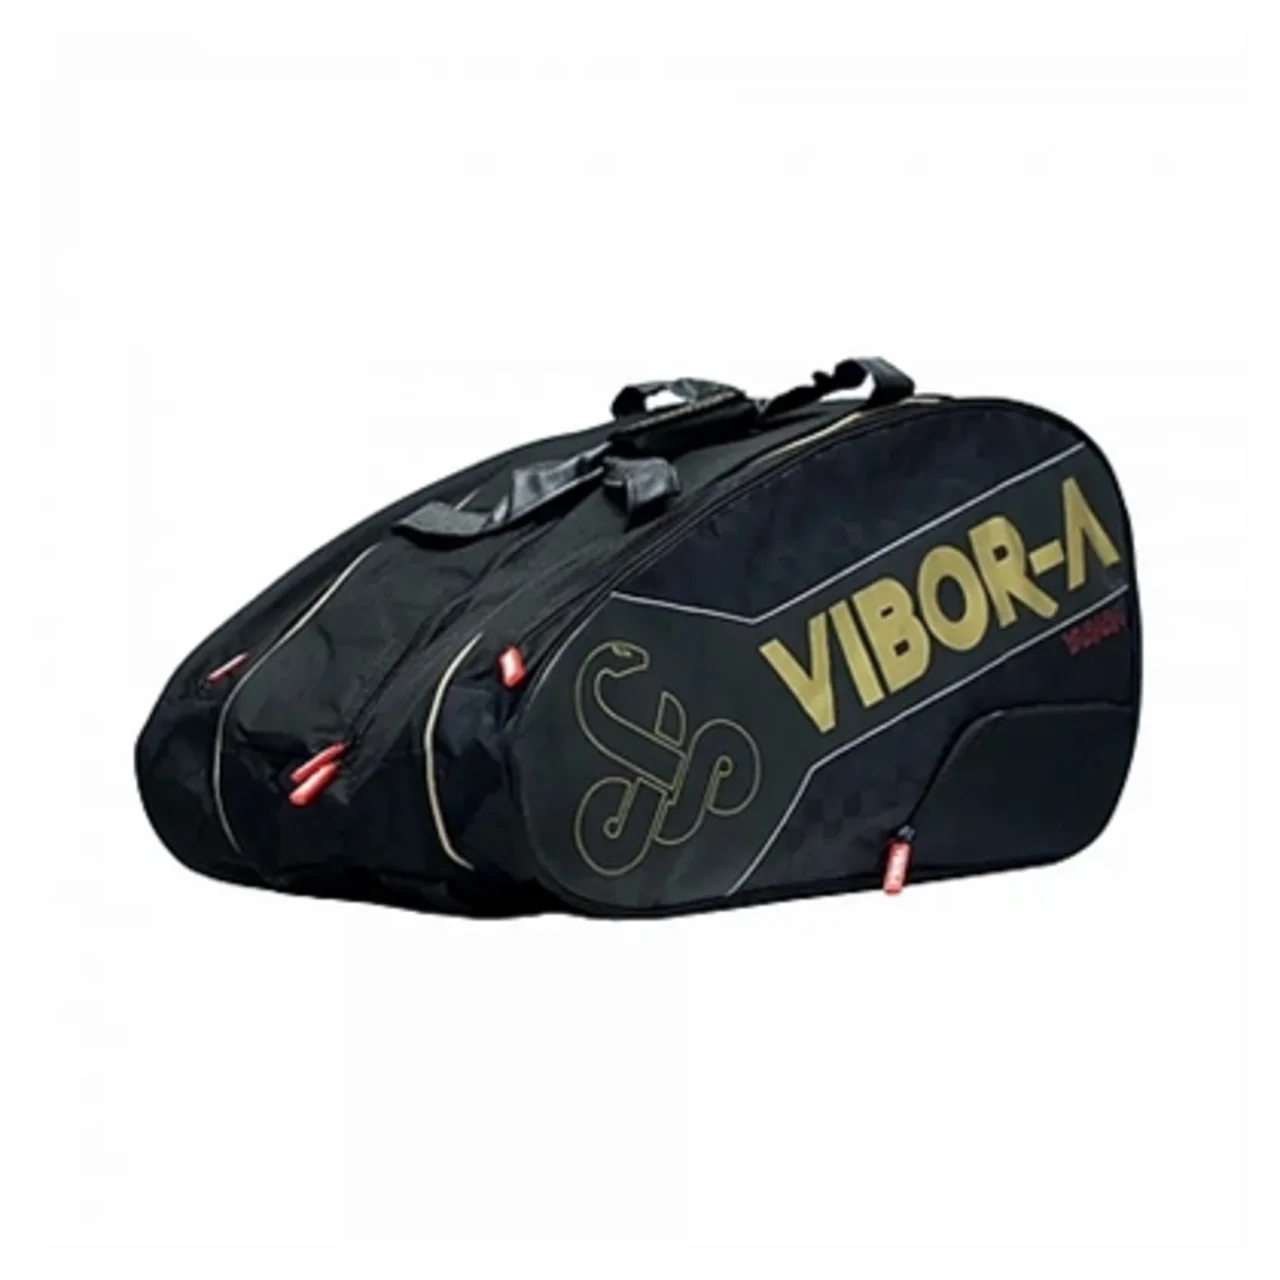 Vibor-A Racketbag Tour Yarara Large